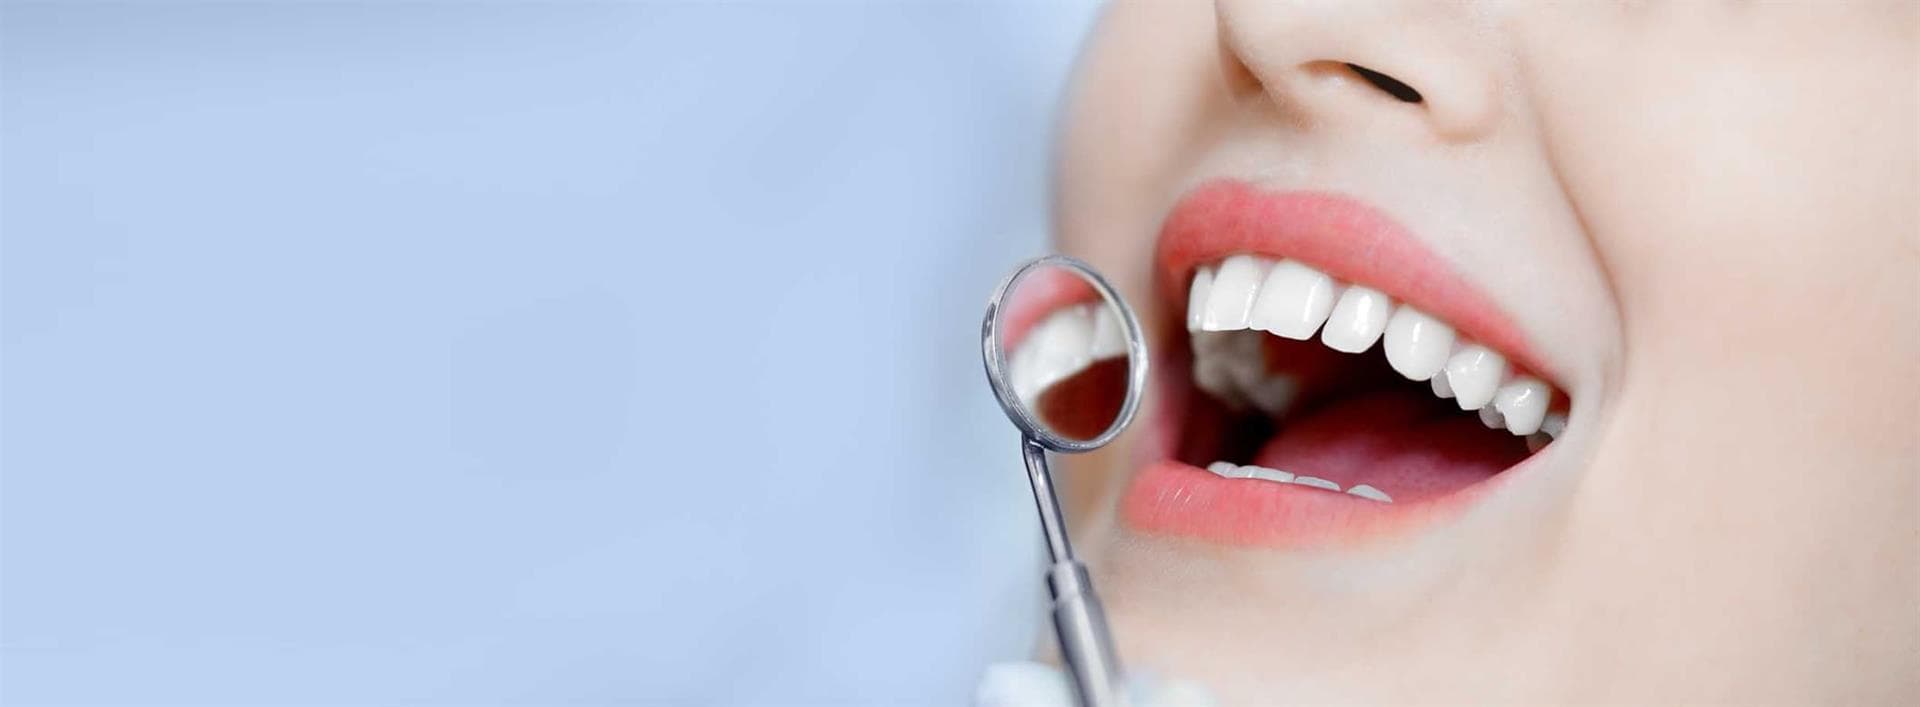 Tratamientos de la clínica dental Ariadna Díaz Mancha